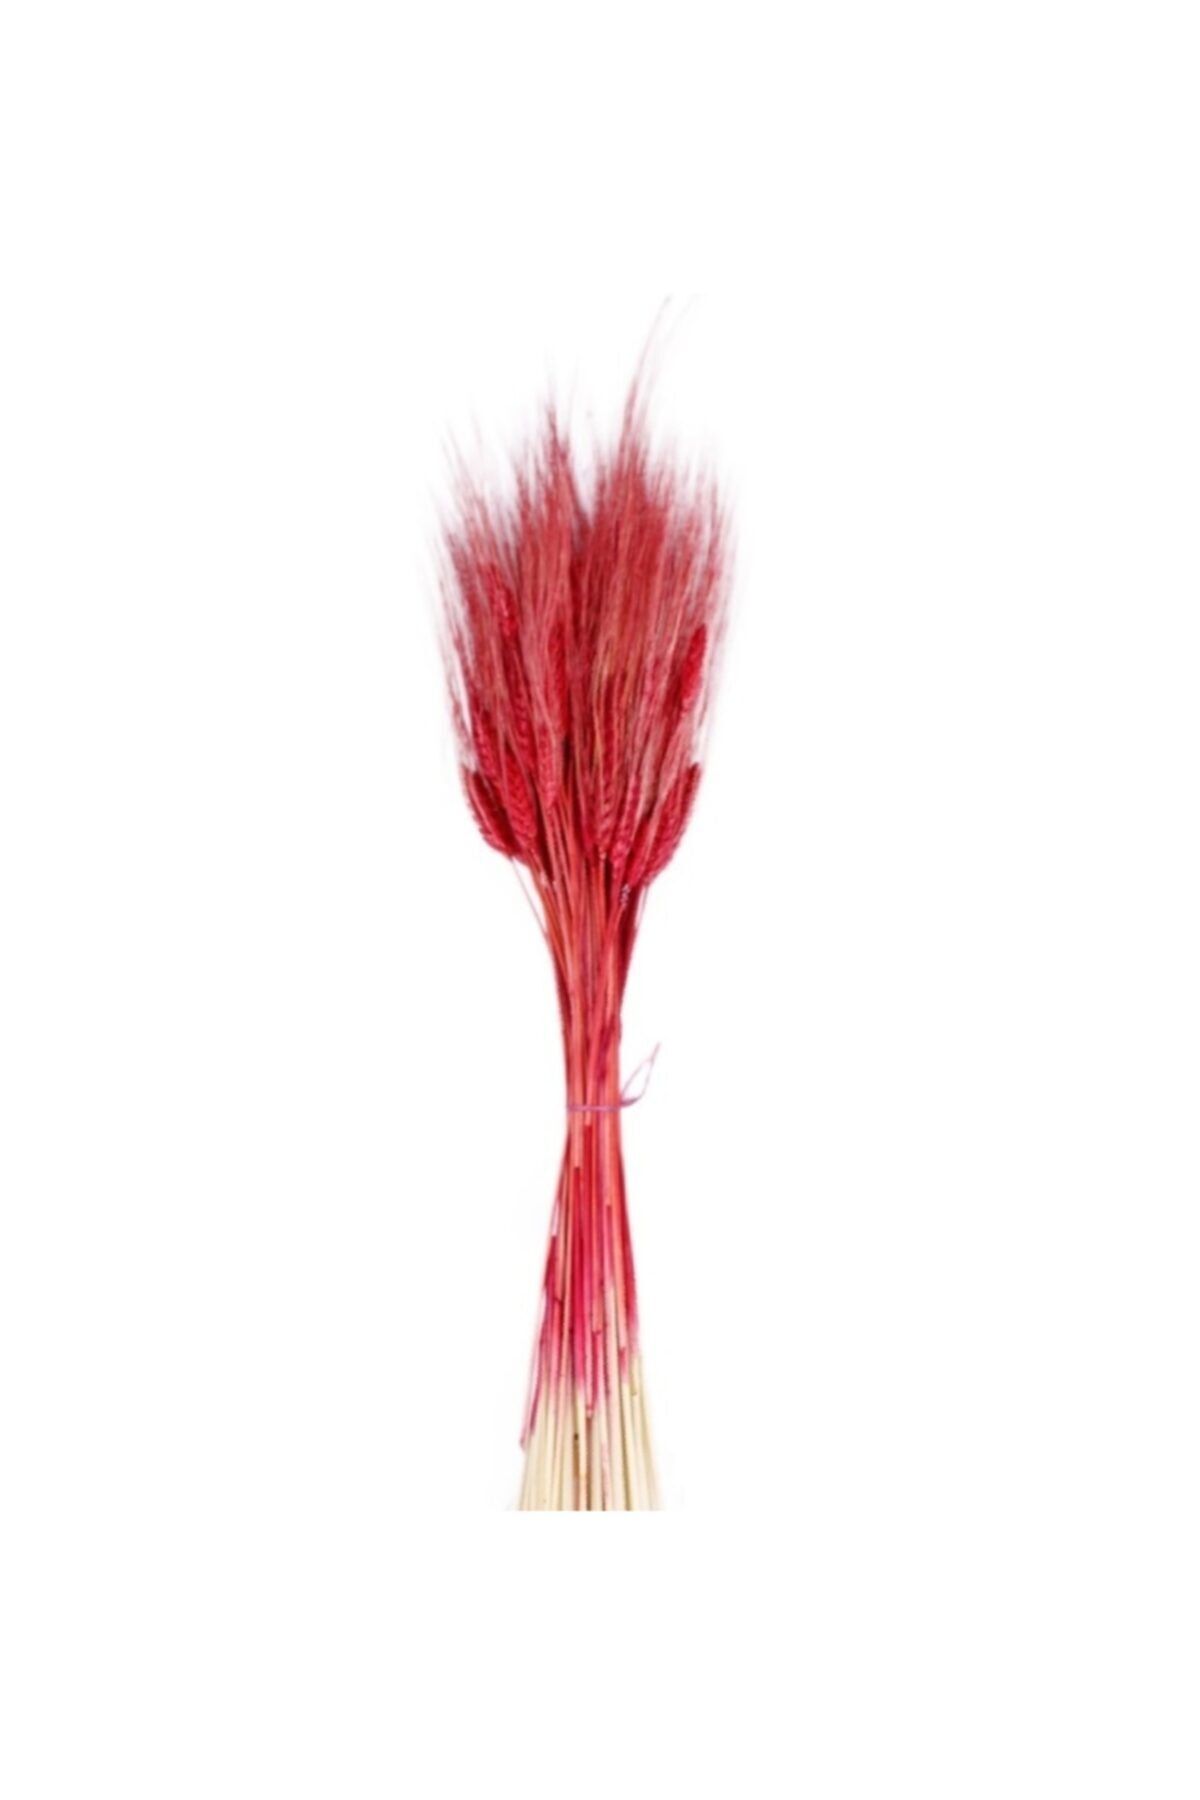 Evsay Kuru Çiçek Doğal Başak Buğday Başağı 45 Cm (1 Demet) Kırmızı